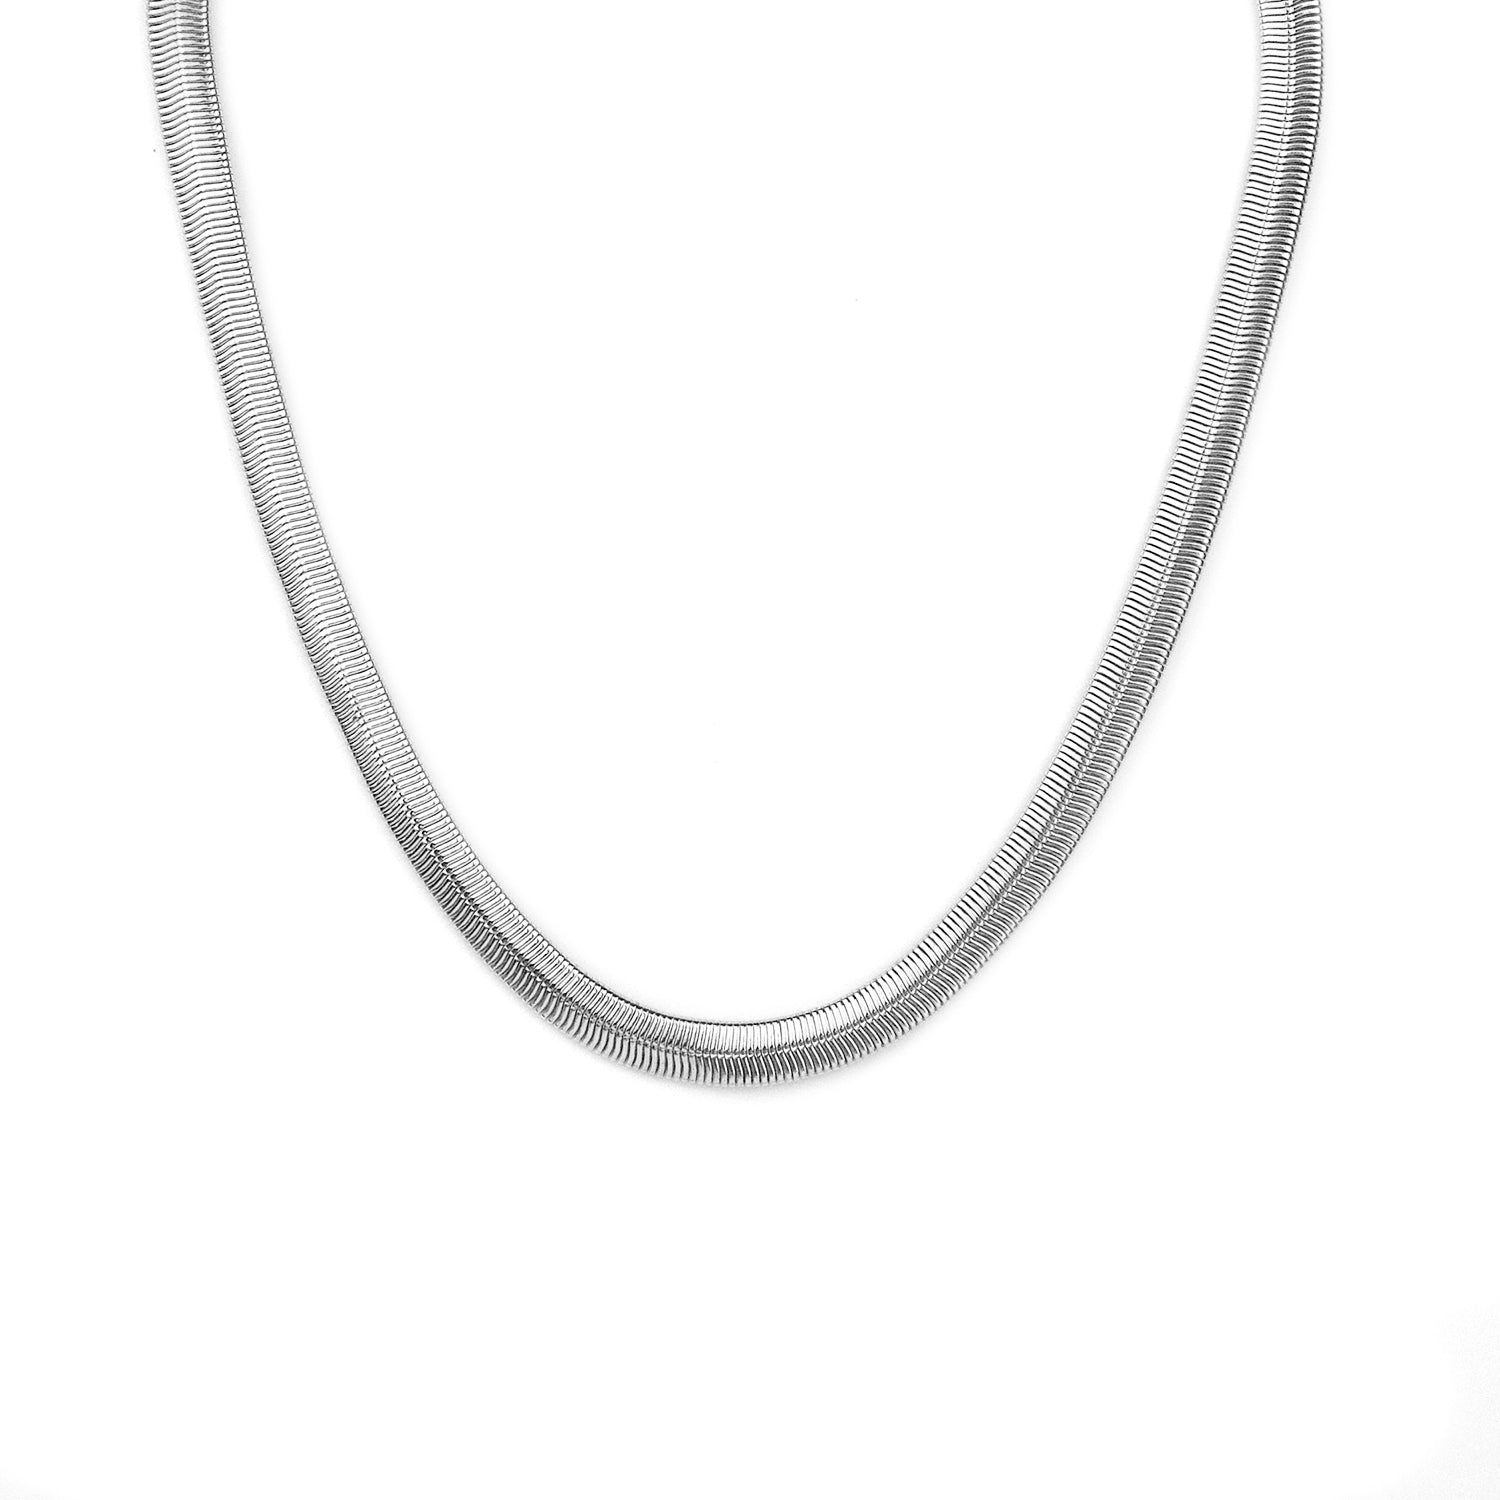 5/16 cobra chain necklace – Marlyn Schiff, LLC